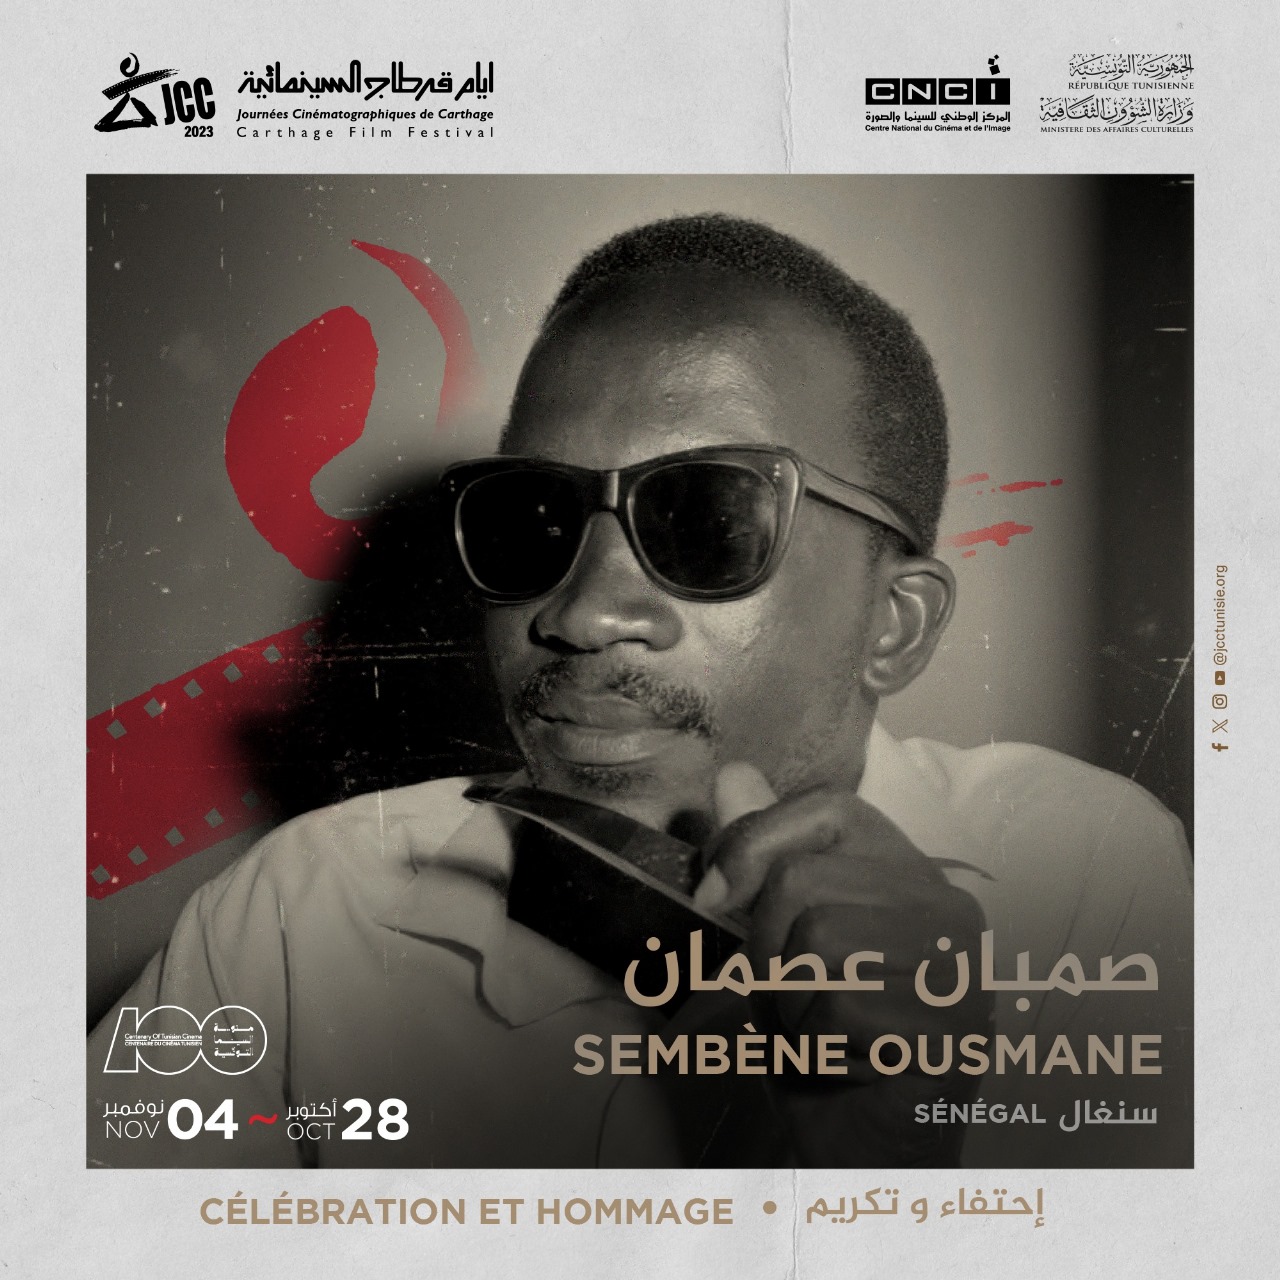 Hommage-célébration de centenaire de la naissance du Sembène Ousmane